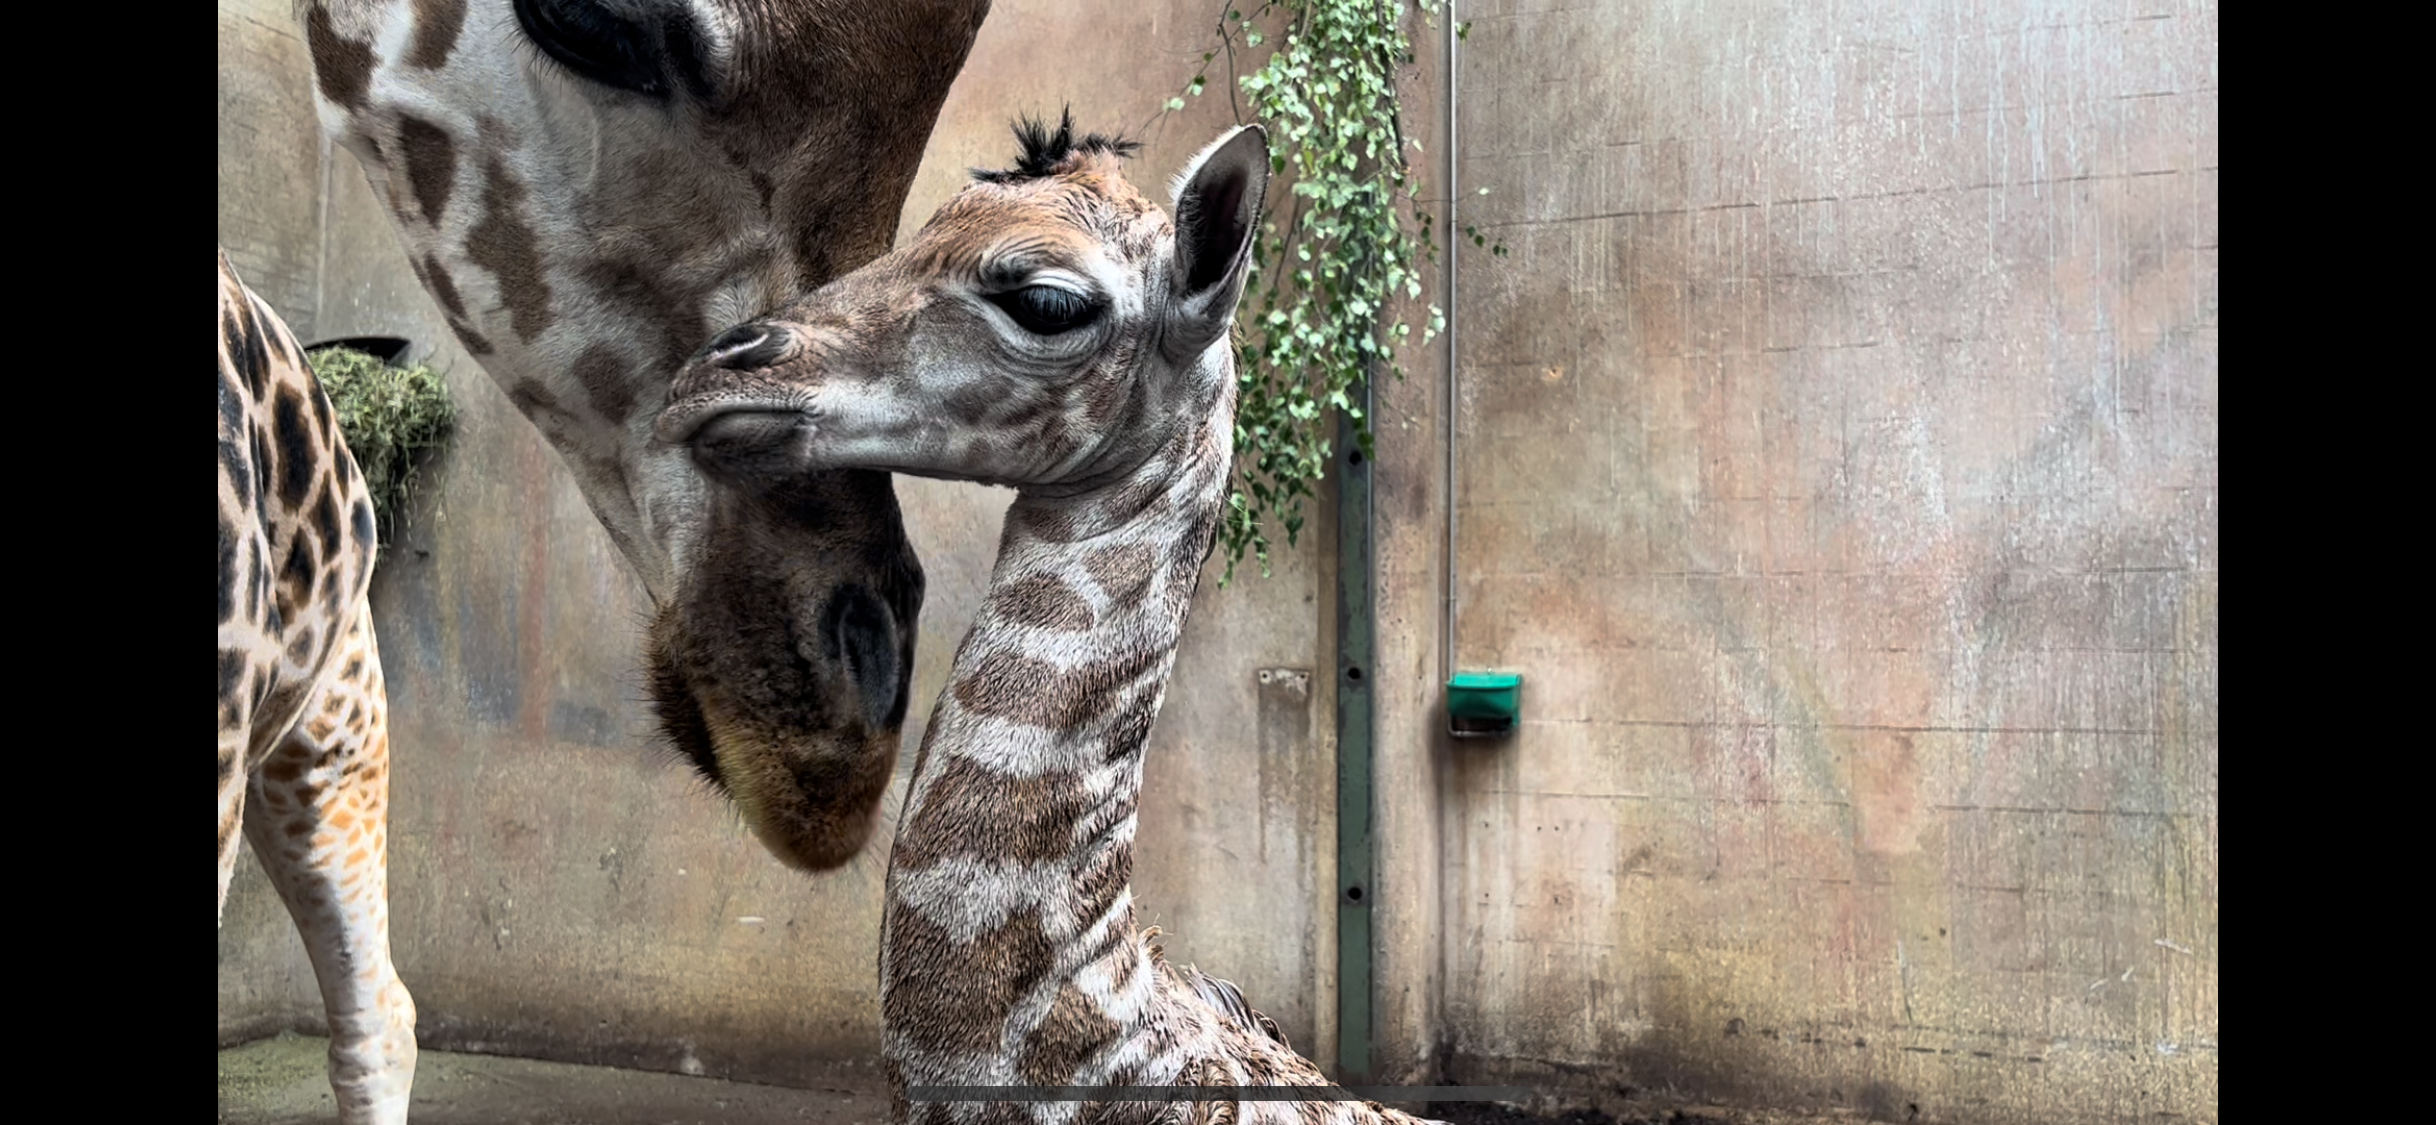 Zoo på vej mod ny rekord efter stor coronanedtur